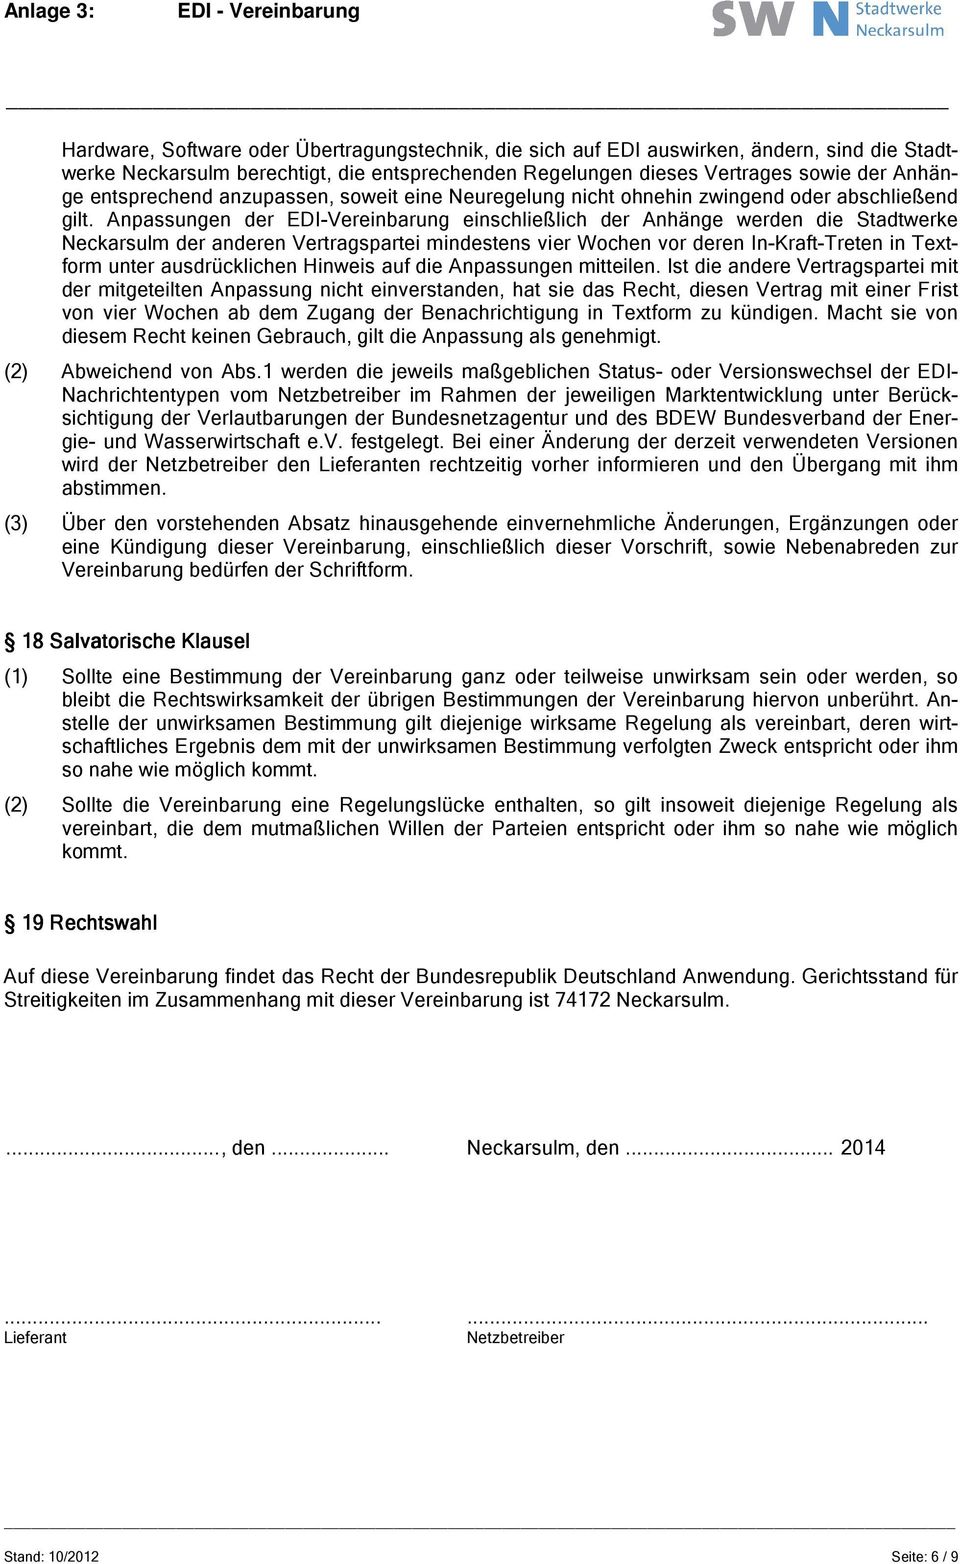 Anpassungen der EDI-Vereinbarung einschließlich der Anhänge werden die Stadtwerke Neckarsulm der anderen Vertragspartei mindestens vier Wochen vor deren In-Kraft-Treten in Textform unter